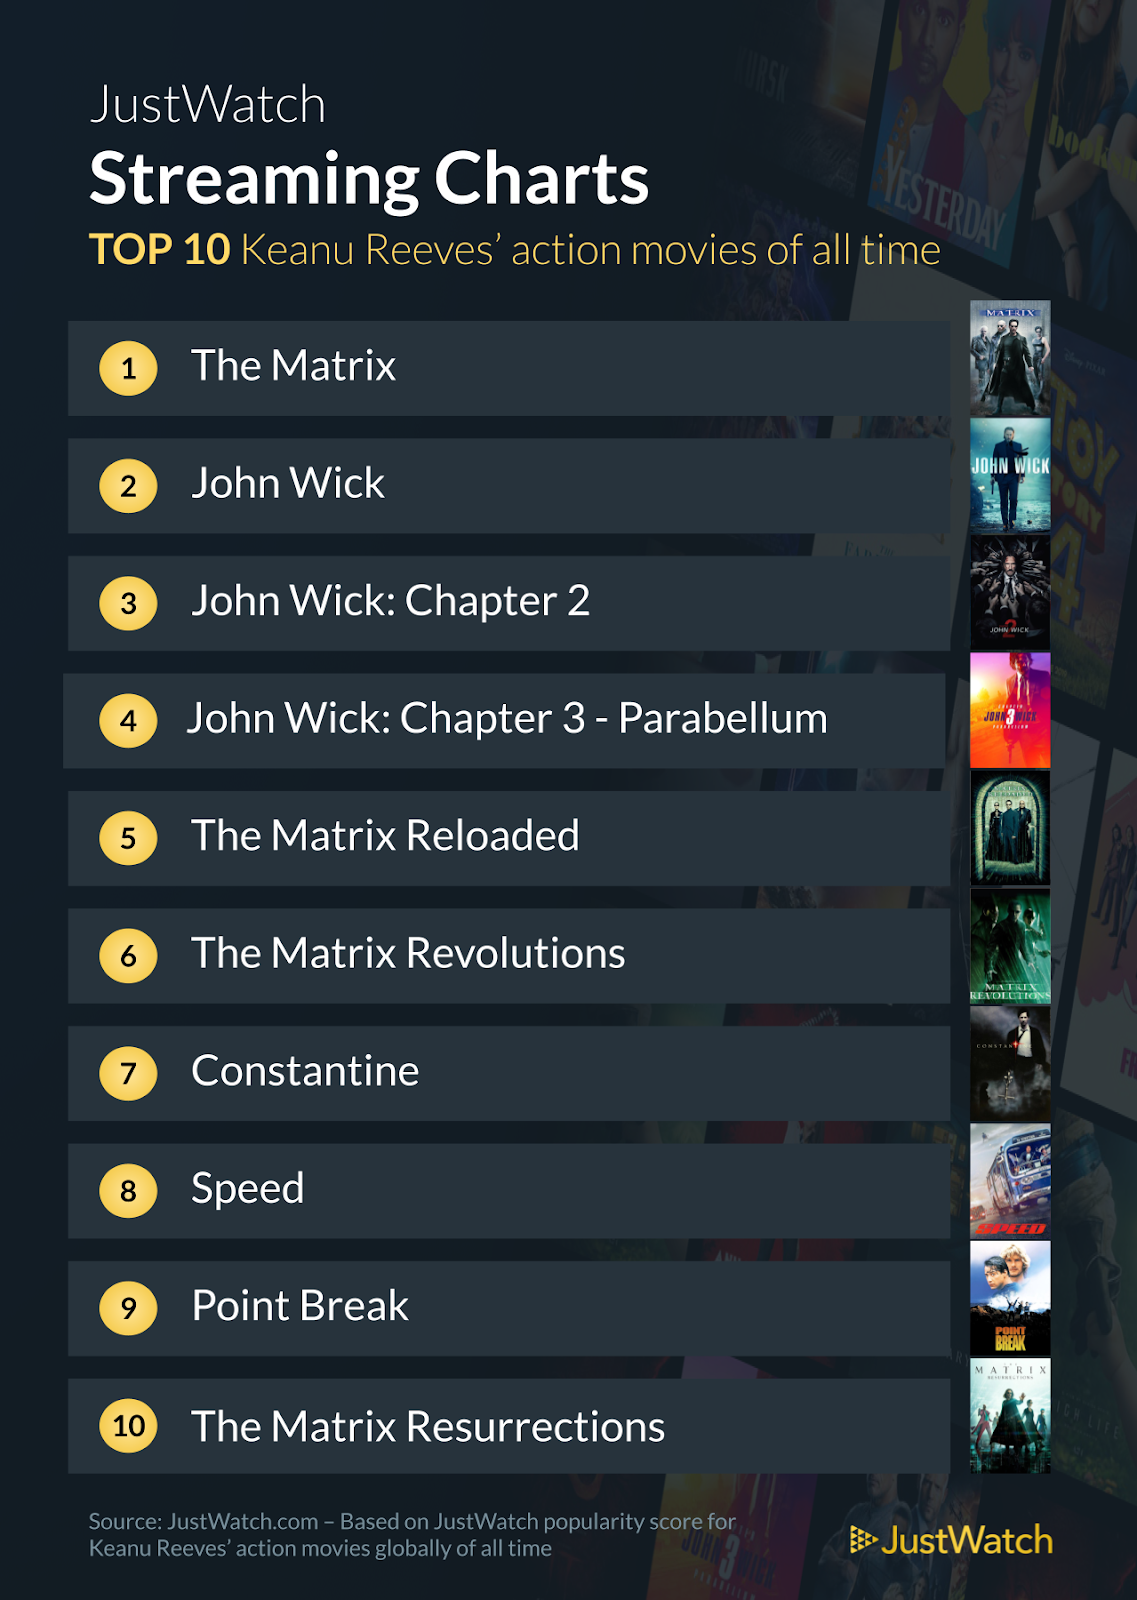 I migliori film interpretati da Keanu Reeves secondo la classifica di JustWatch